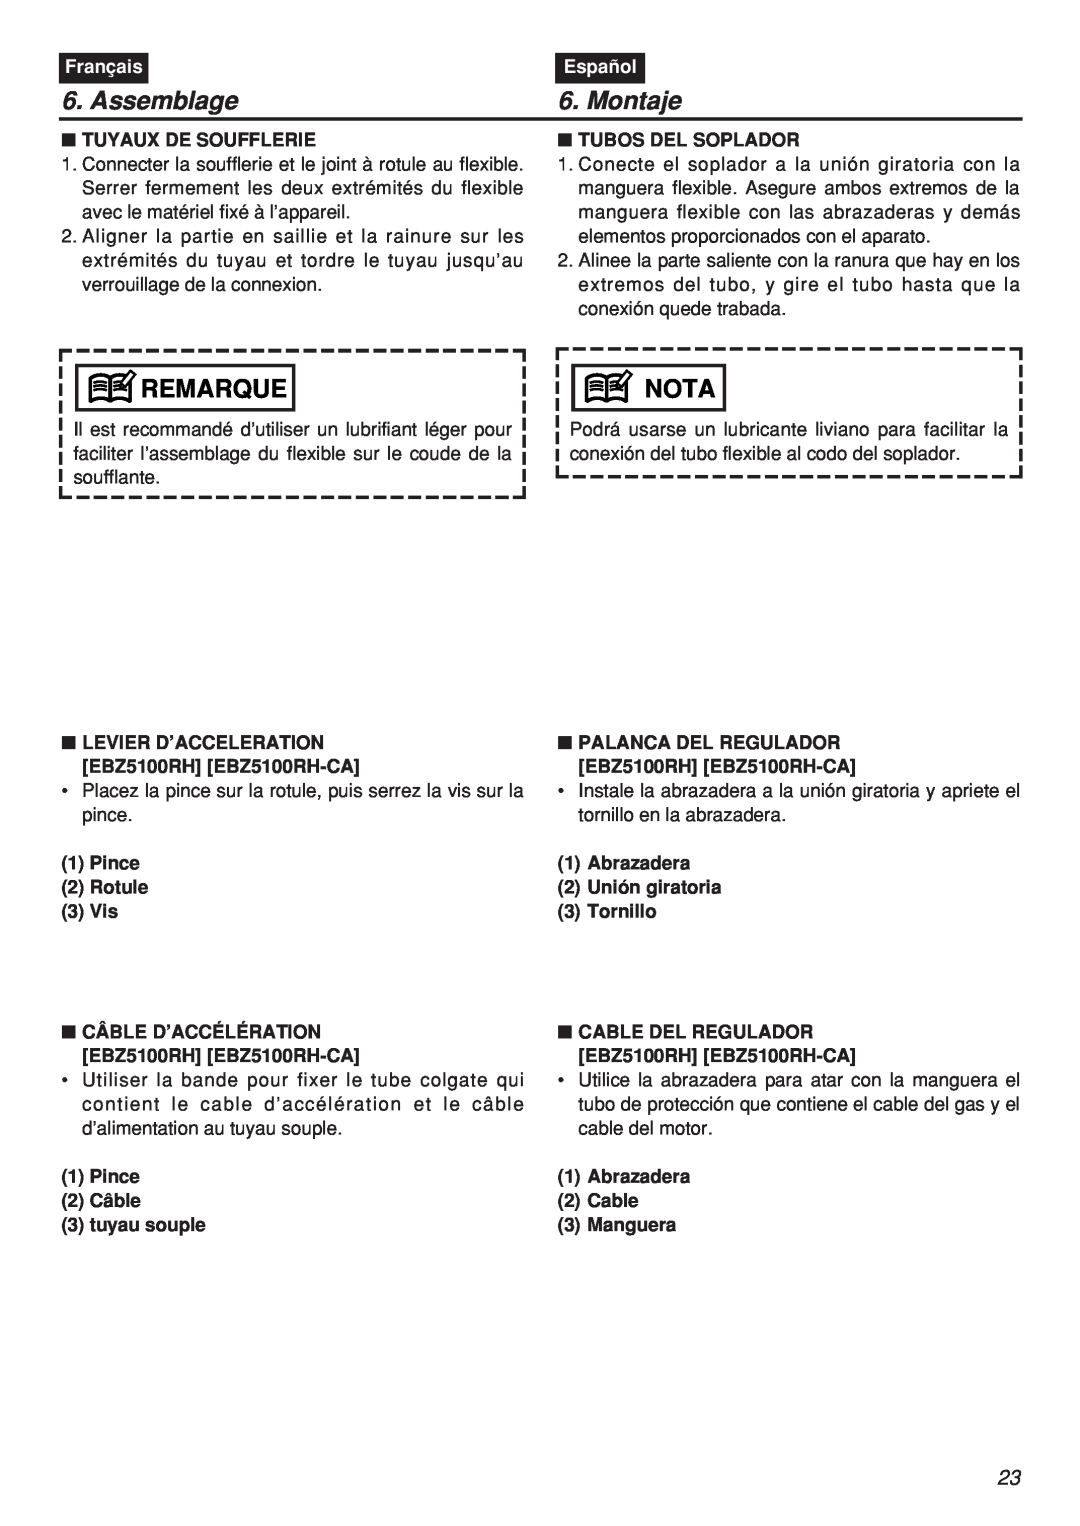 Zenoah EBZ100-CA manual Assemblage, Montaje, Remarque, Nota, Français, Español, Tuyaux De Soufflerie, Tubos Del Soplador 